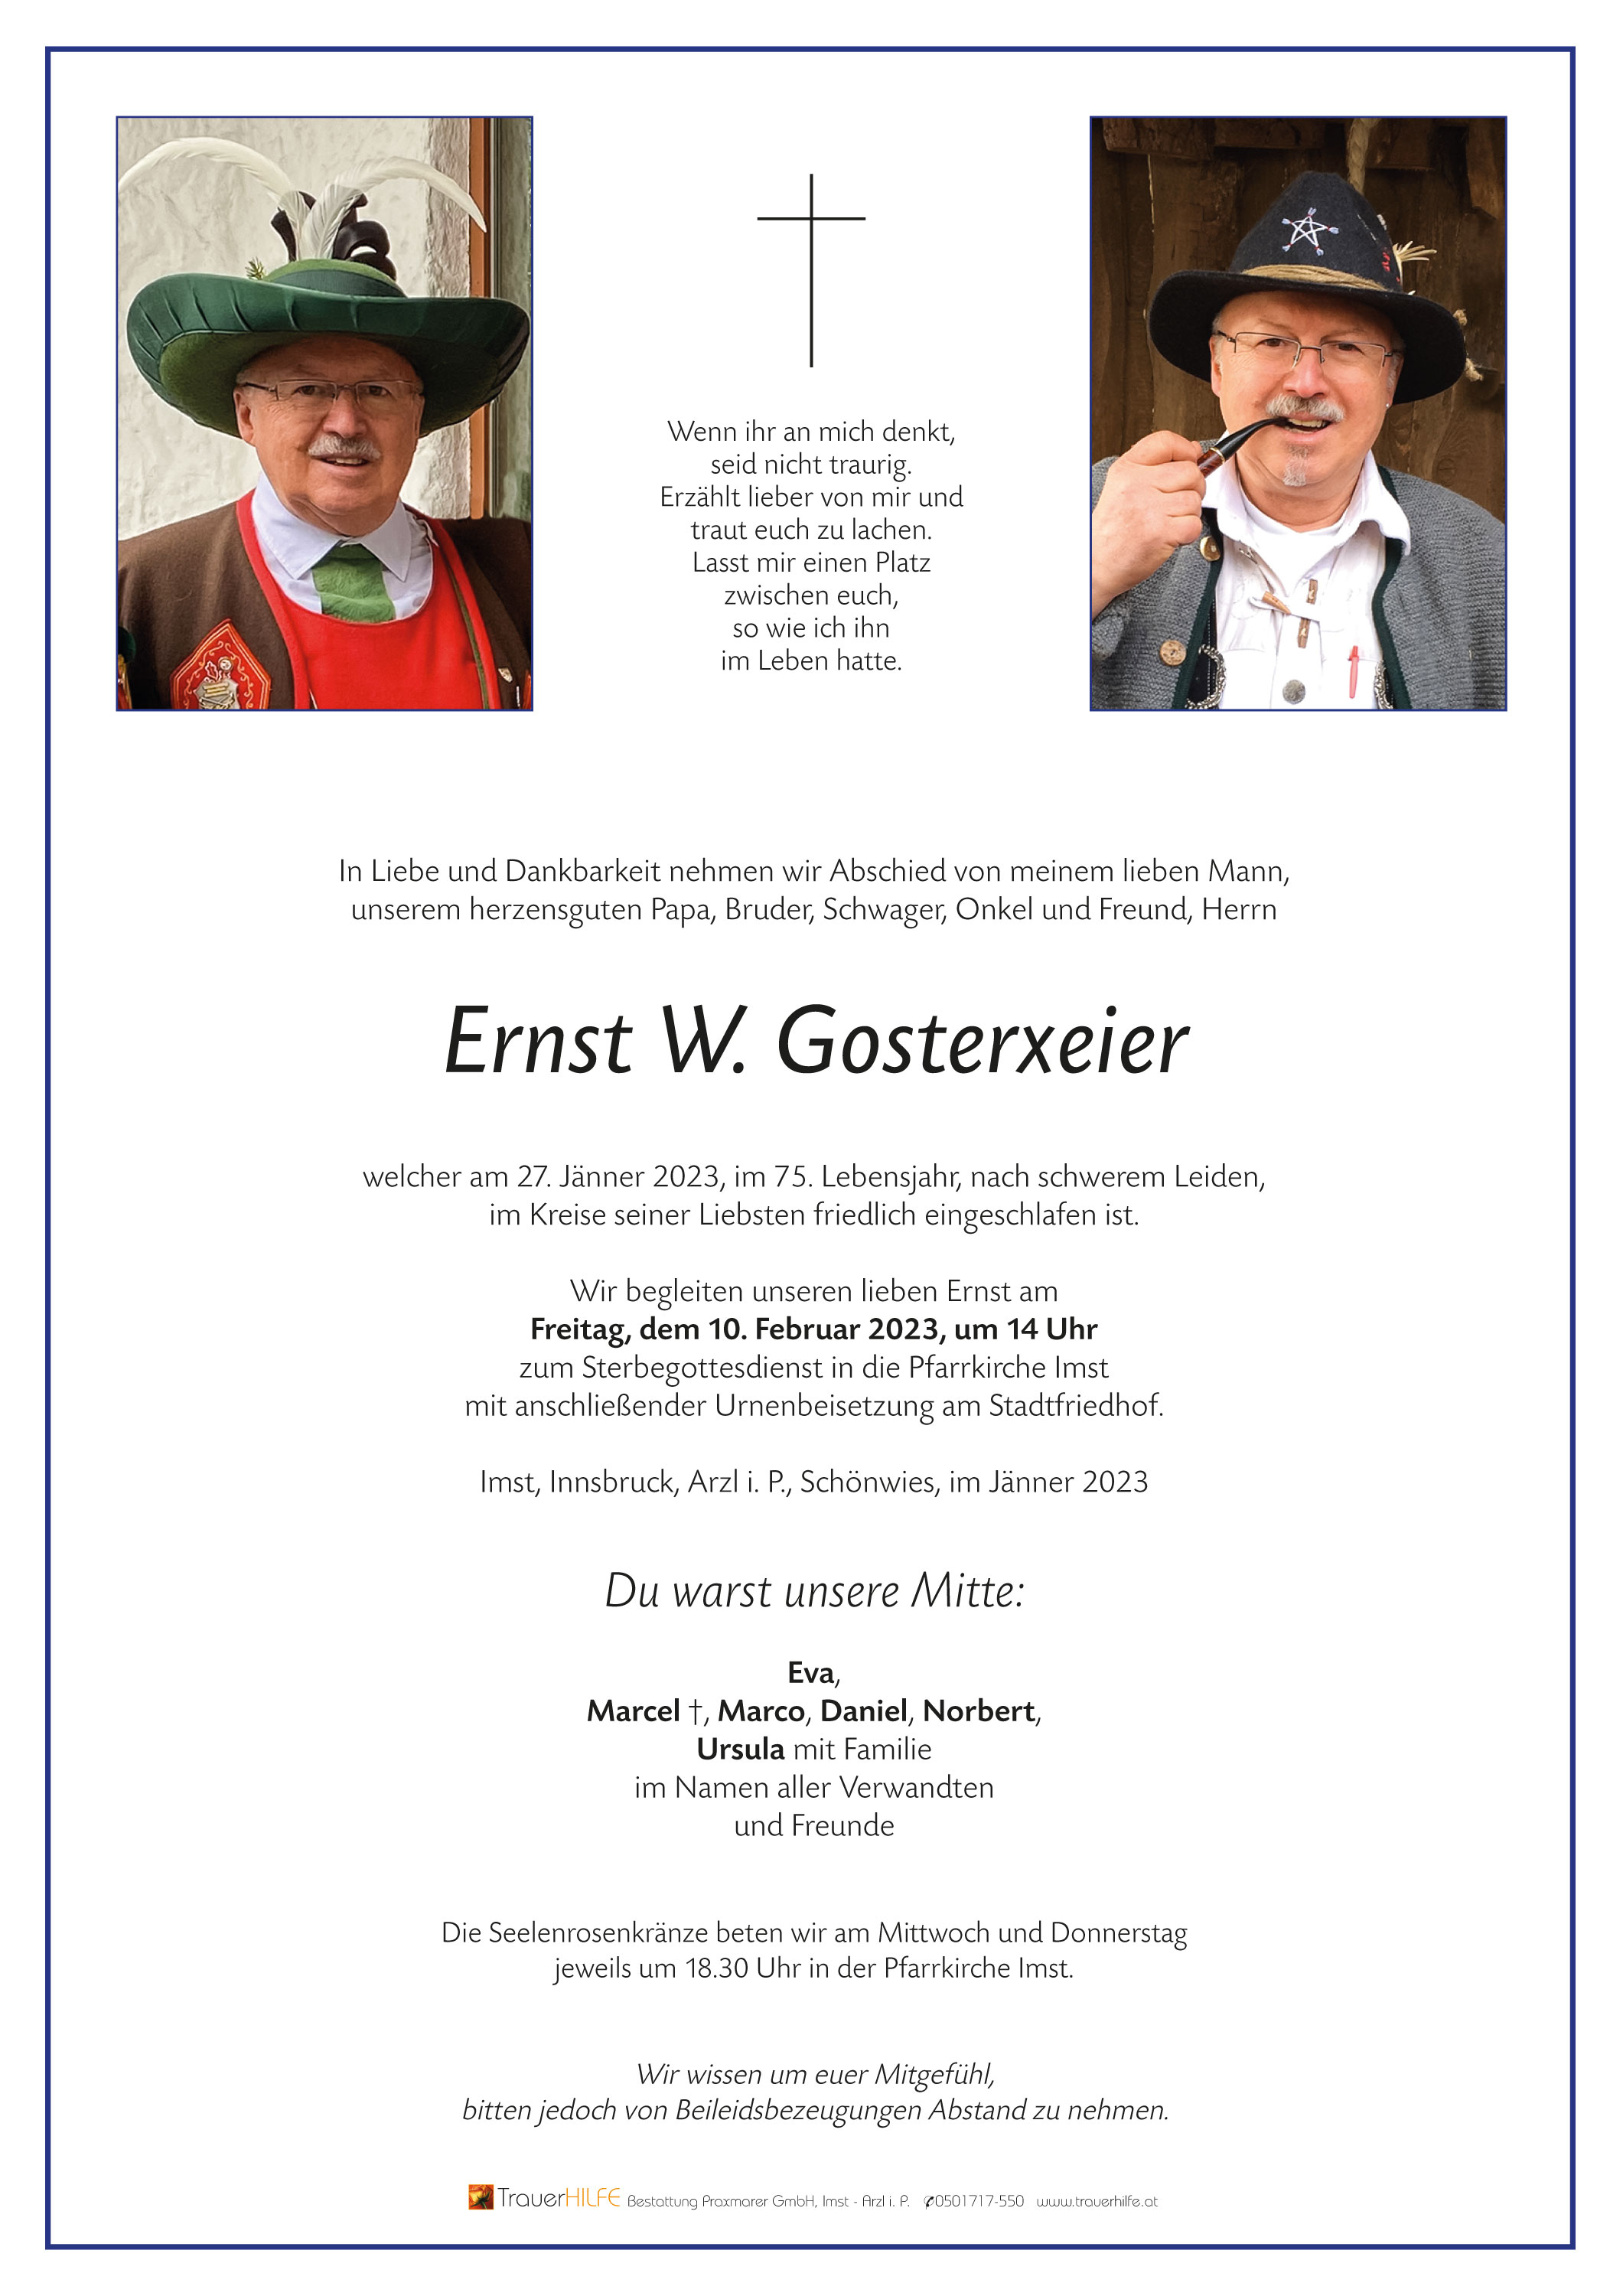 Ernst Gosterxeier